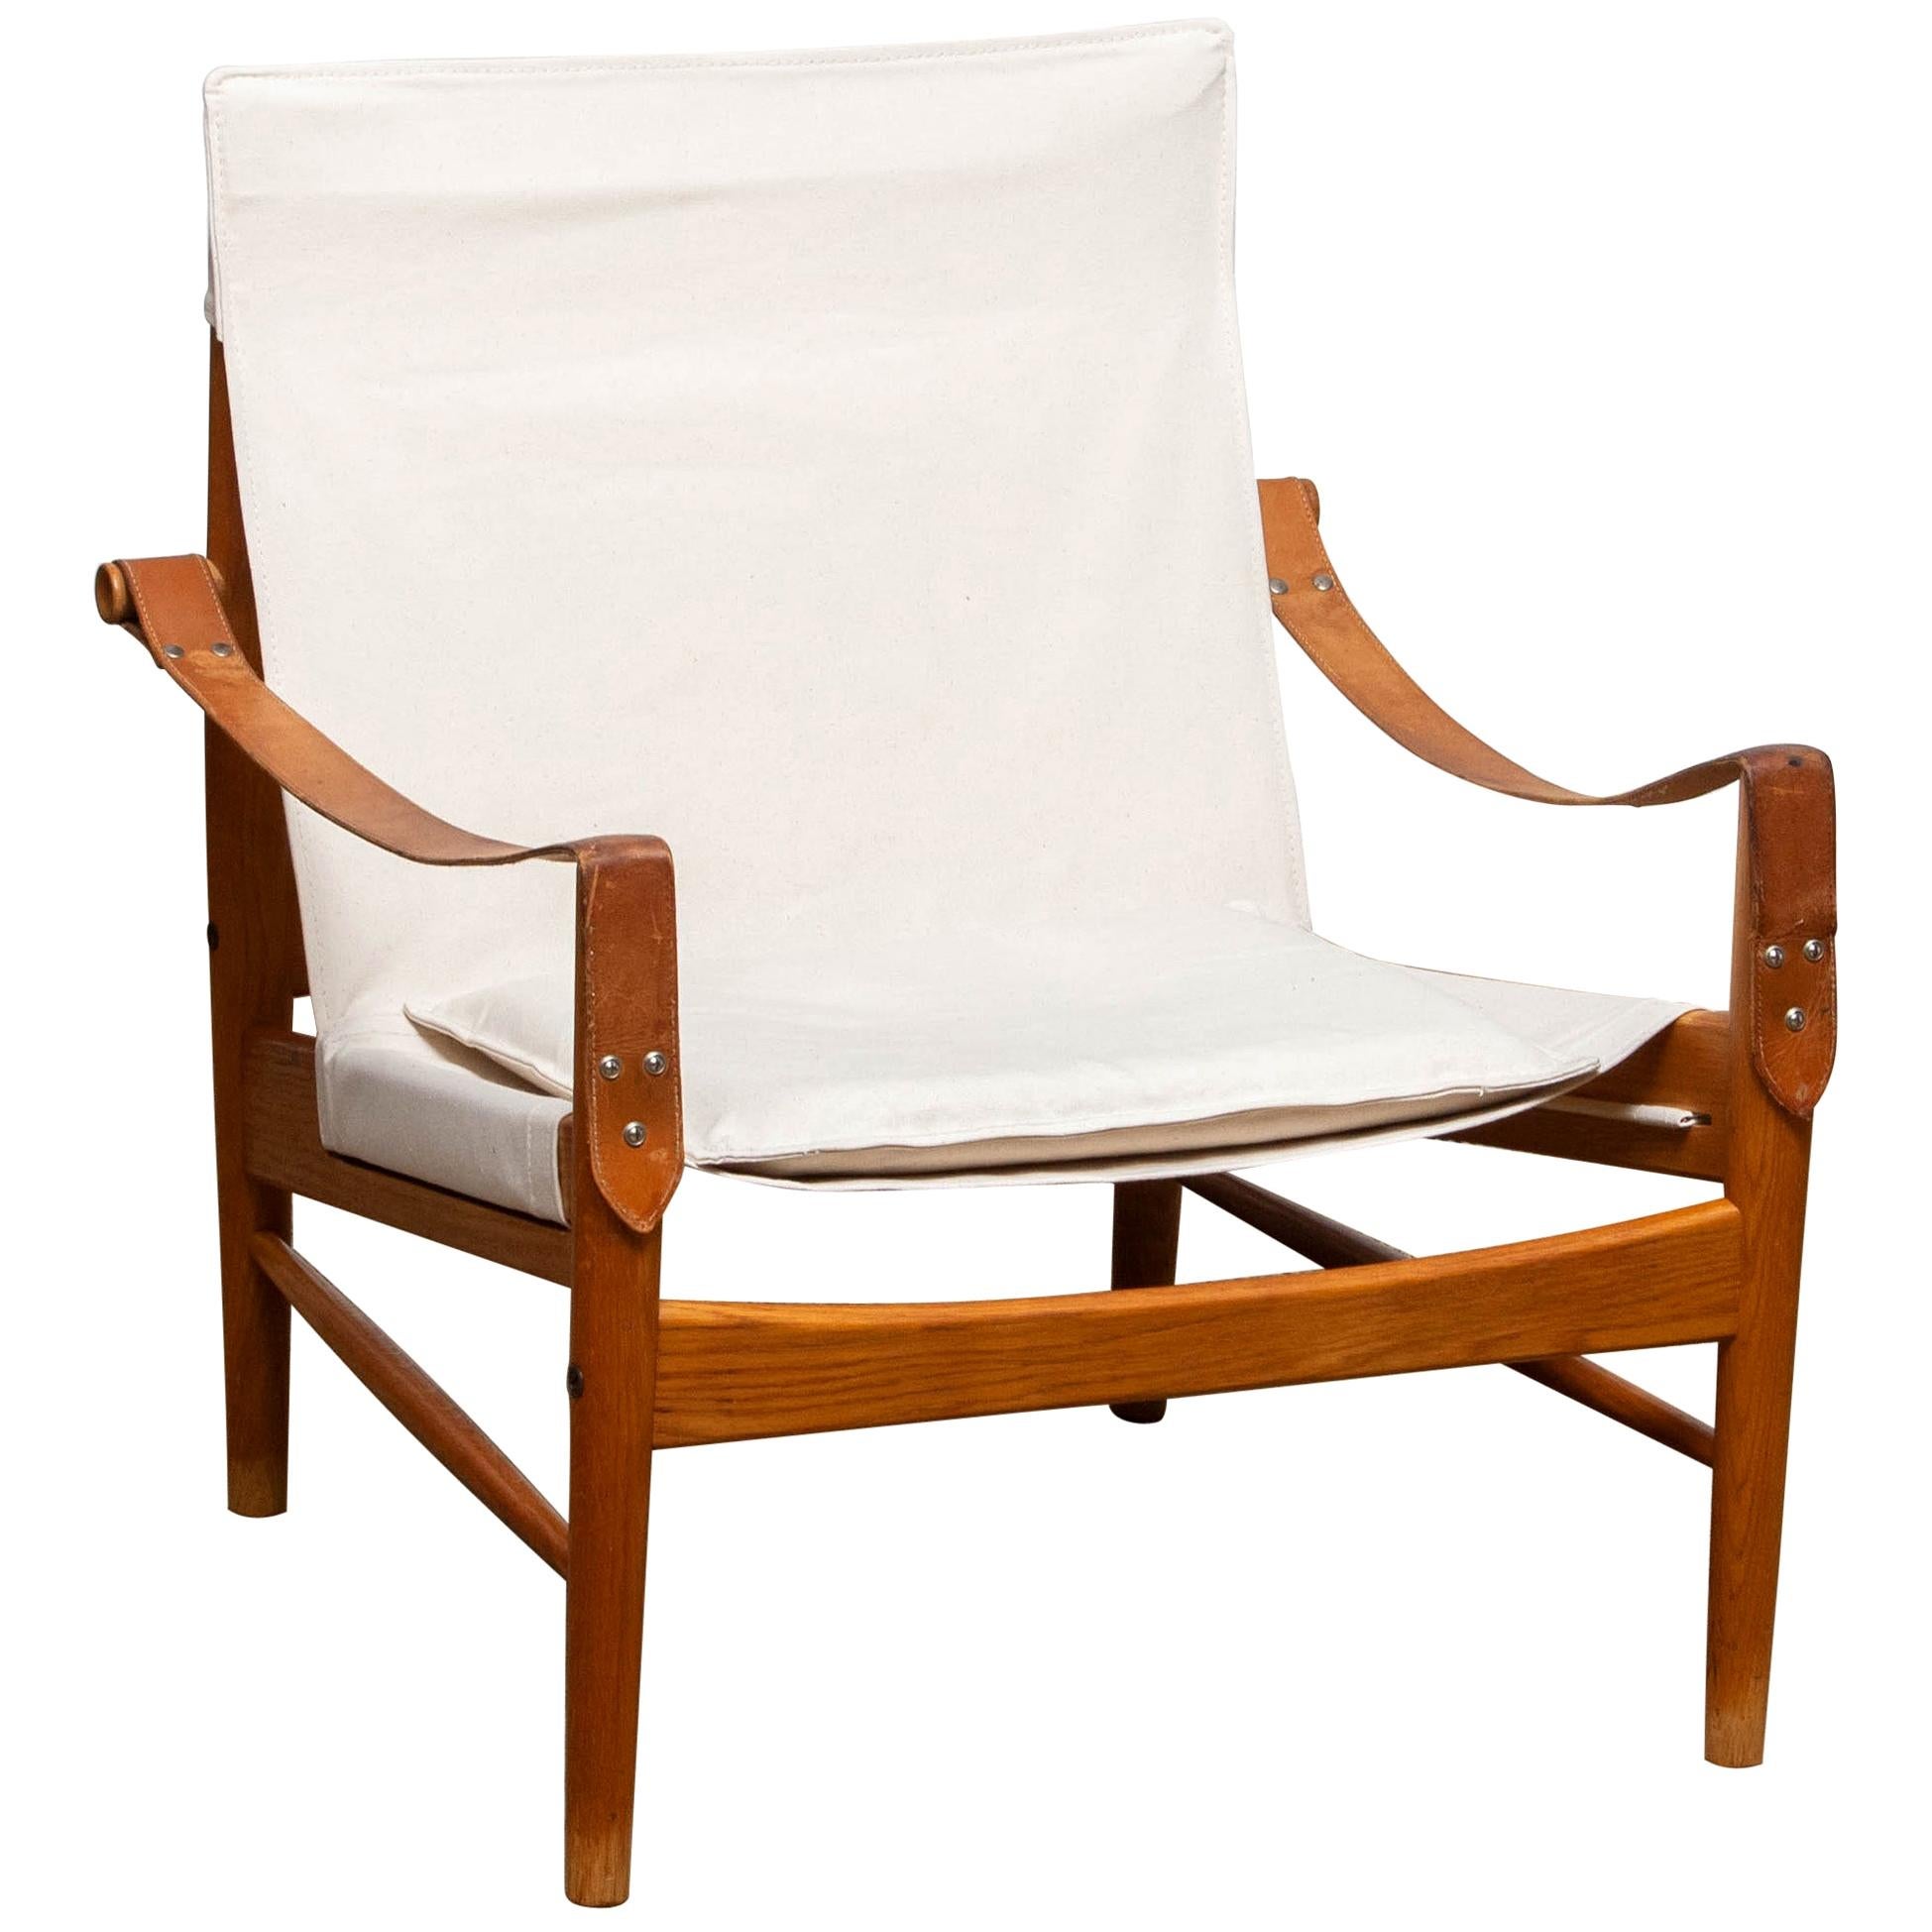 Schöner Safaristuhl, entworfen von Hans Olsen für Viska Möbler in Kinna, Schweden.
Diese Stühle sind aus Eichenholz mit einer neuen Polsterung aus Segeltuch gefertigt.
Es ist in einem wunderbaren Zustand und markiert.
Zeitraum: 1960s.
Abmessungen: H